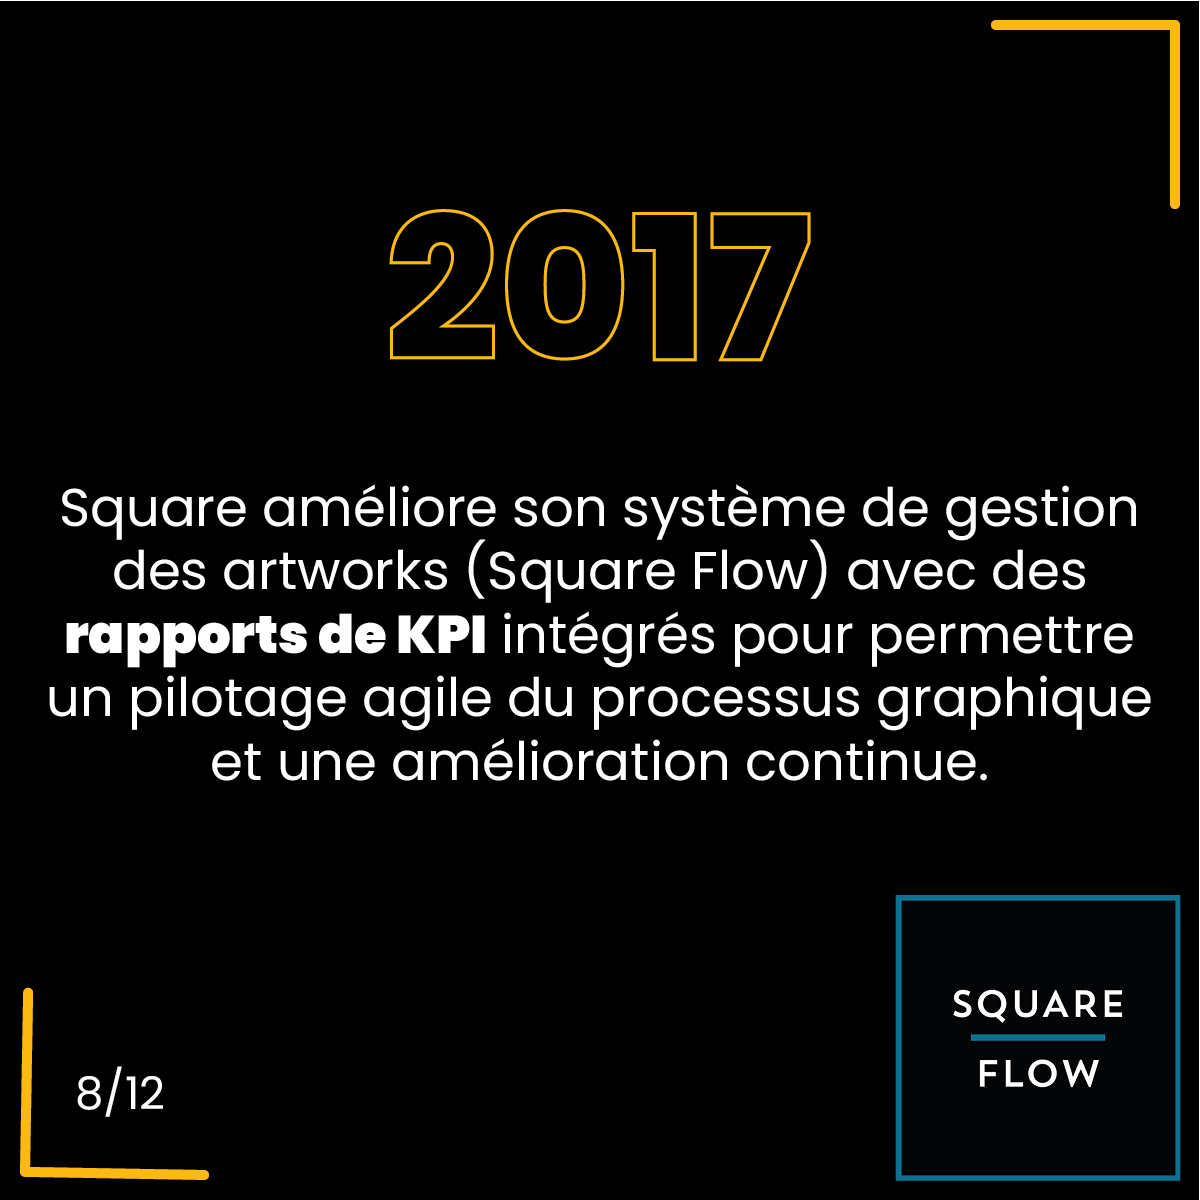 2017, Square améliore son système de gestion des artworks (Square Flow) avec des rapports de KPI intégrés pour permettre un pilotage agile du processus graphique et une amélioration continue.